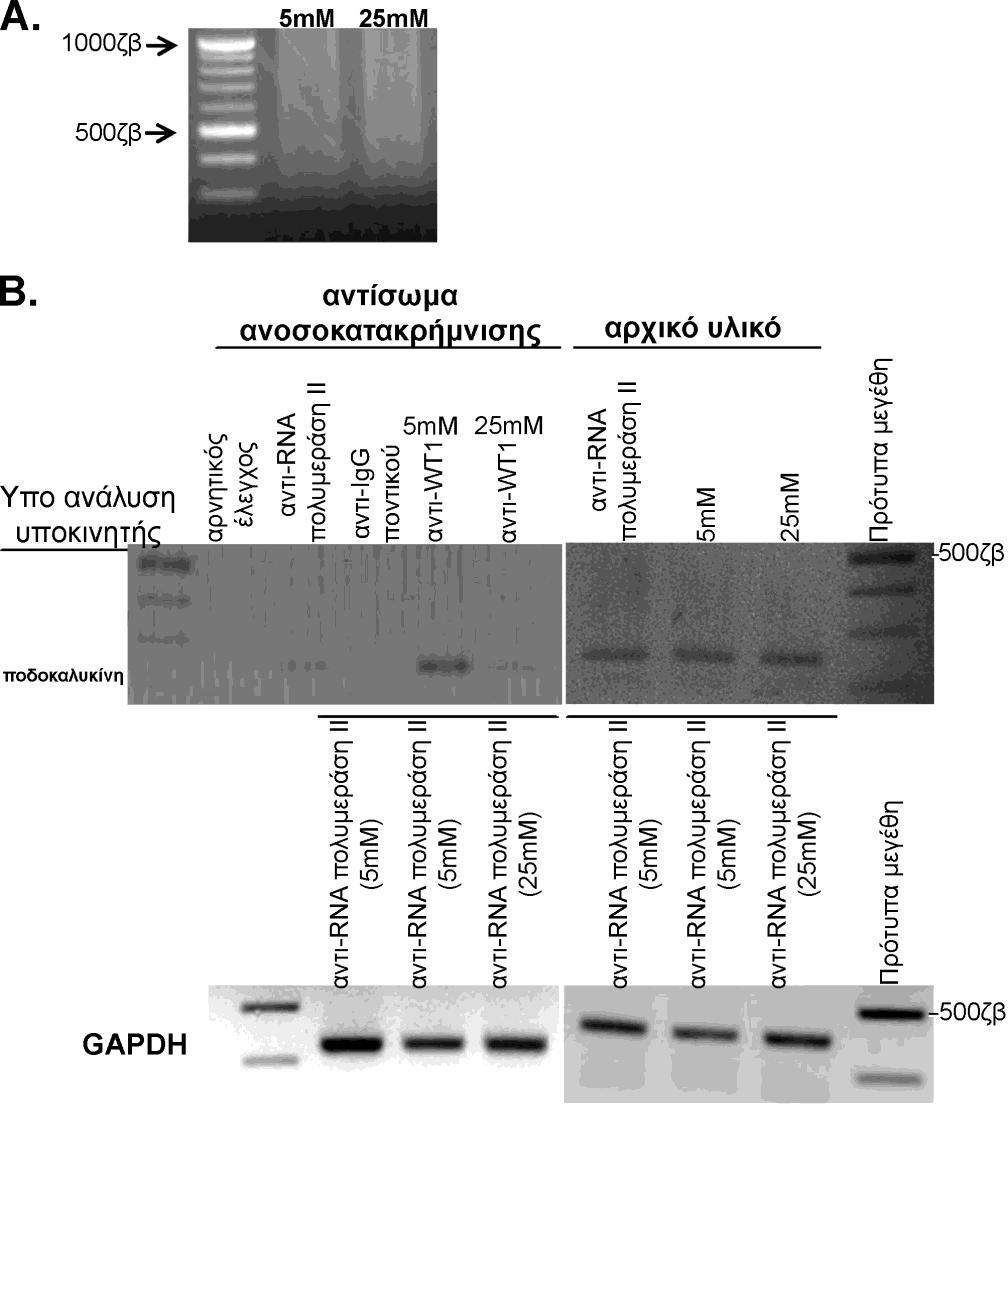 Σχήμα 15. Ανάλυση της πρόσδεσης του WT1 στον υποκινητή του γονιδίου της ποδοκαλυκίνης. HGEC που καλλιεργούνται συνεχώς υπό την παρουσία 5mM ή 25mM γλυκόζης μονιμοποιήθηκαν με φορμαλδεΰδη.